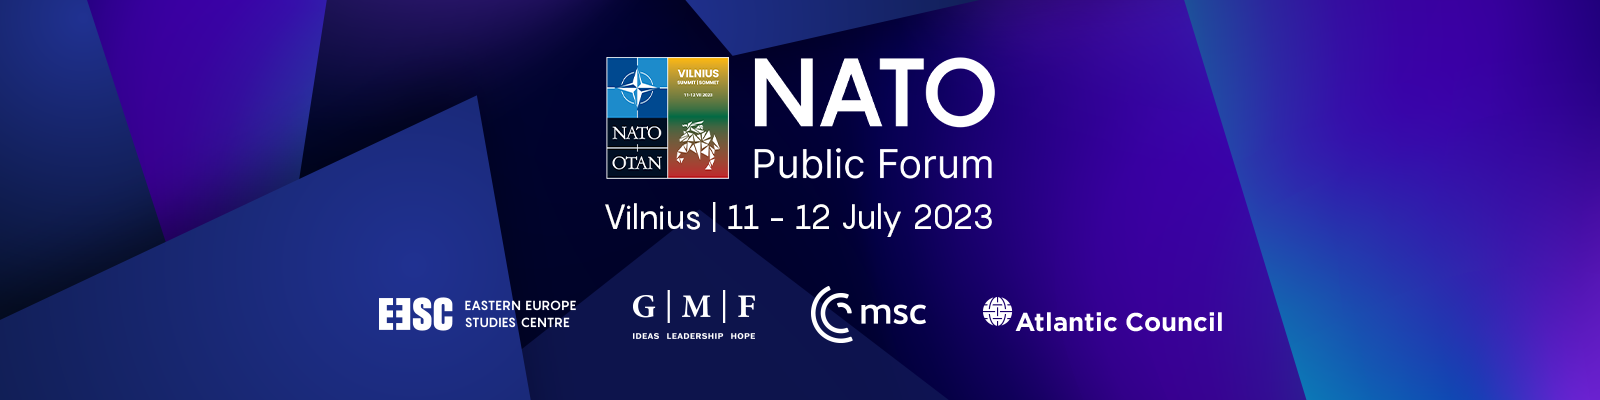 NATO Public Forum 2023